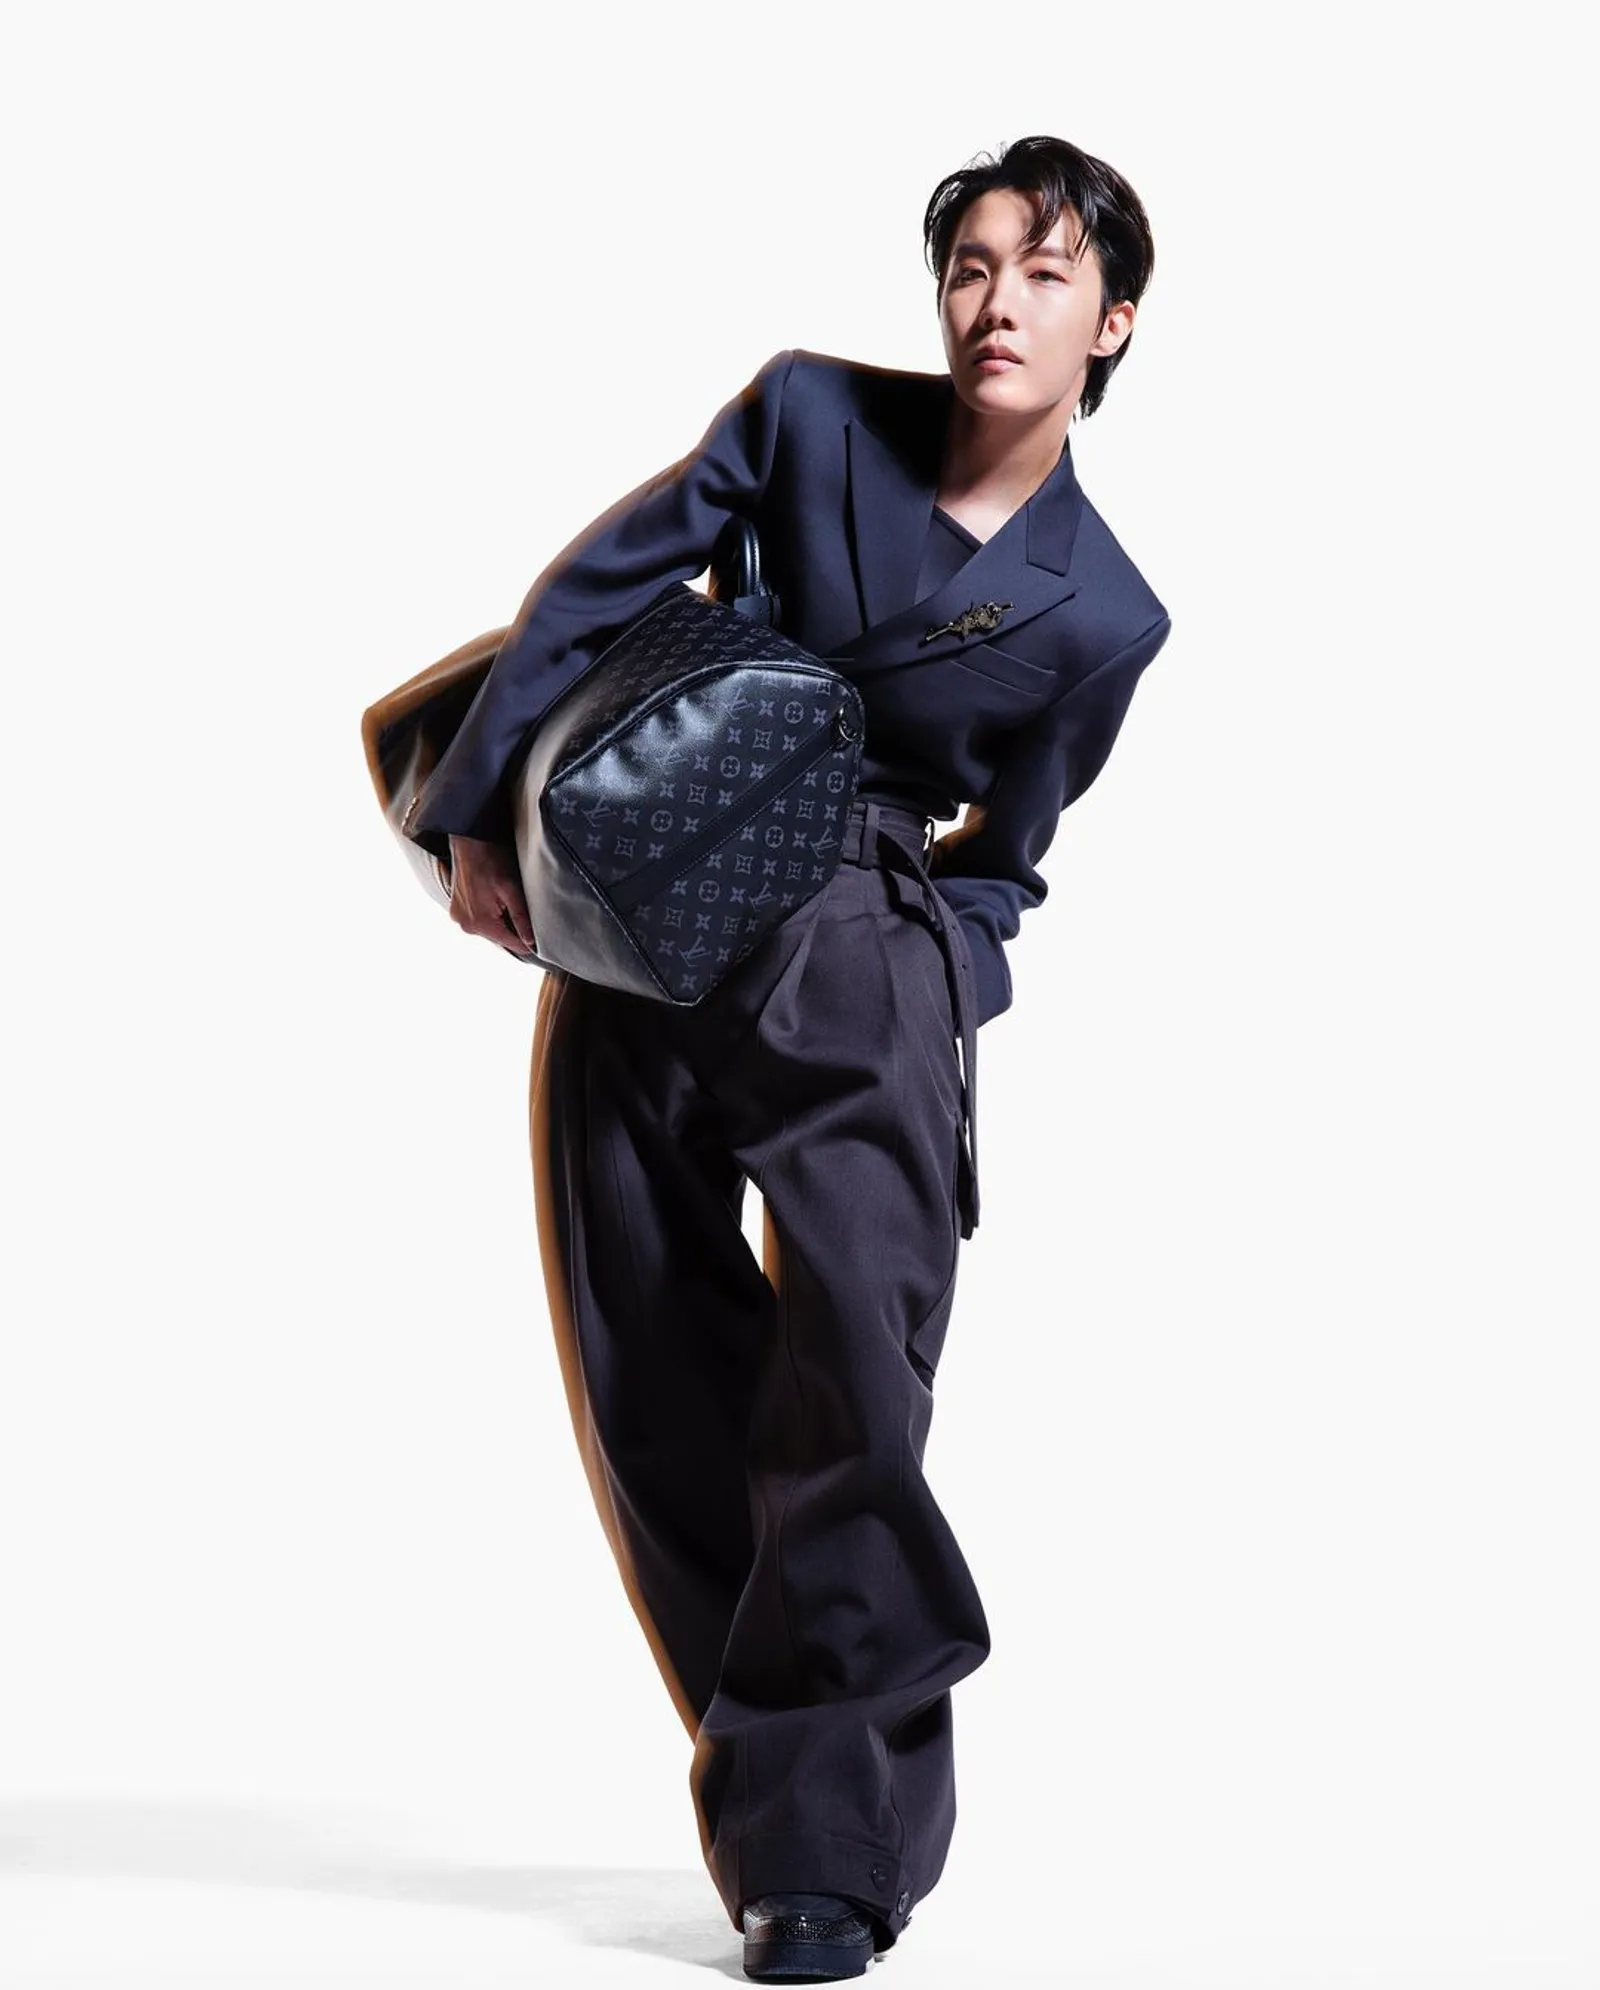 j-hope 'BTS' Tampilkan Pose Unik untuk Campaign Pertama Louis Vuitton